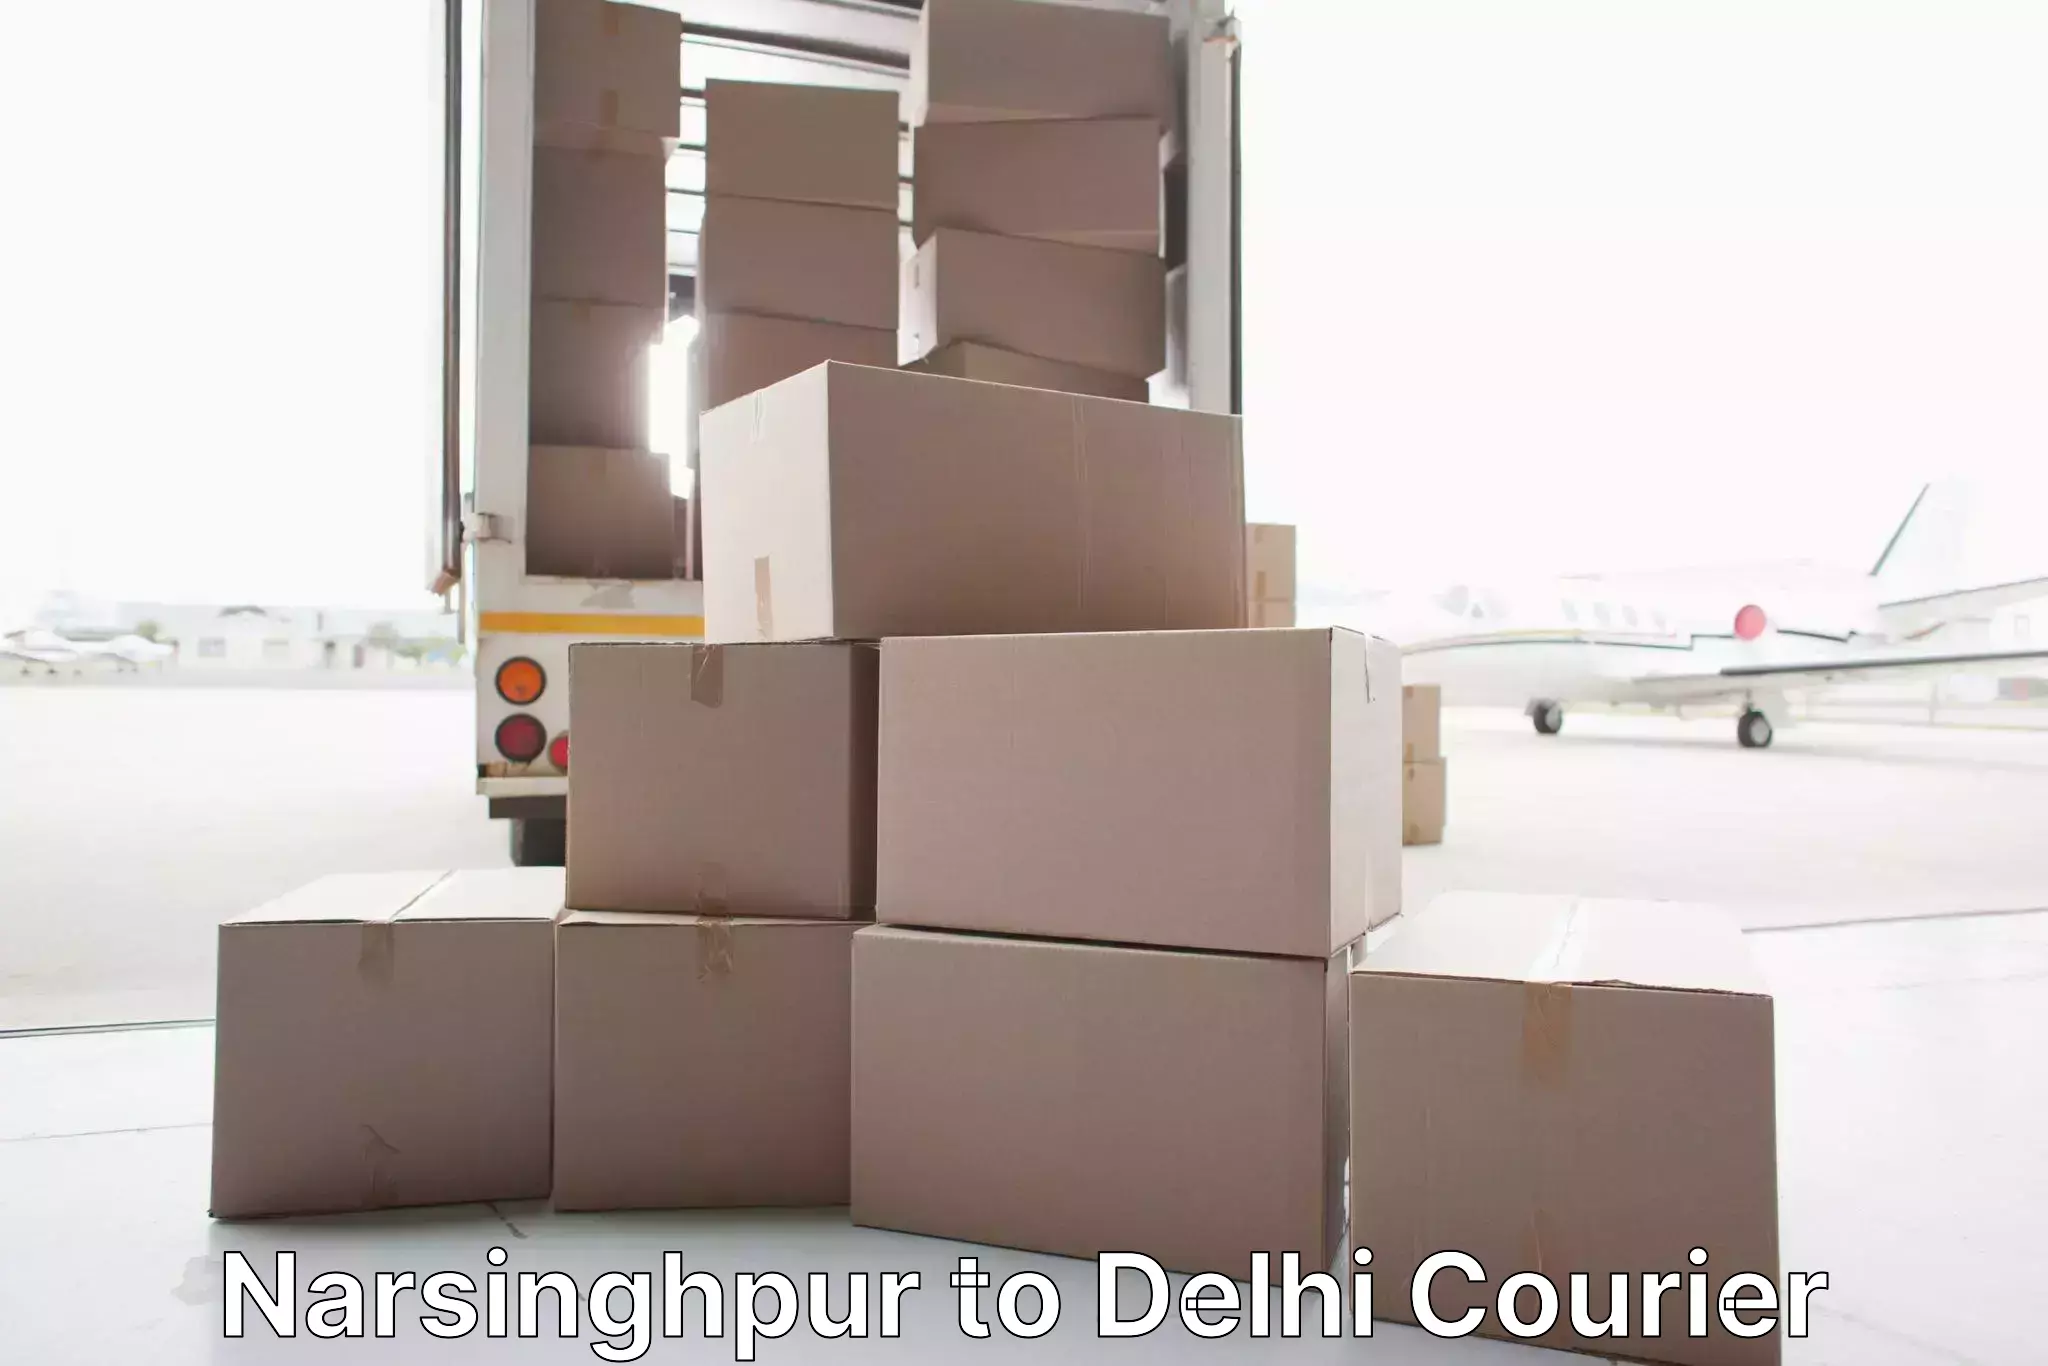 Furniture delivery service Narsinghpur to Kalkaji